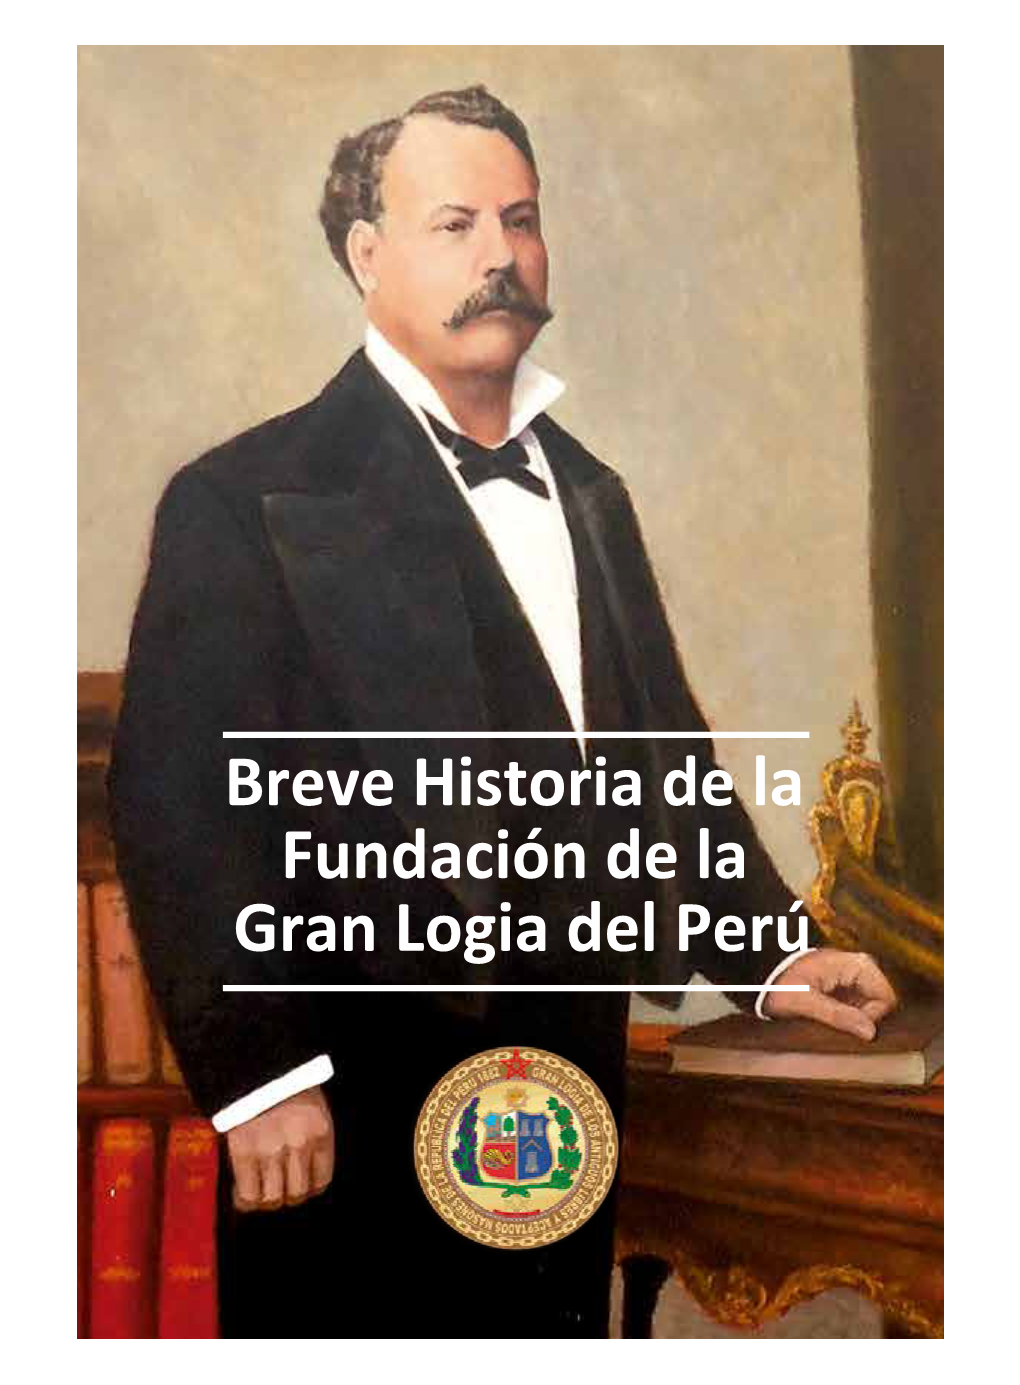 Breve Historia De La Fundación De La Gran Logia Del Perú Breve Historiadela Gran Logiadelperú Fundación Dela